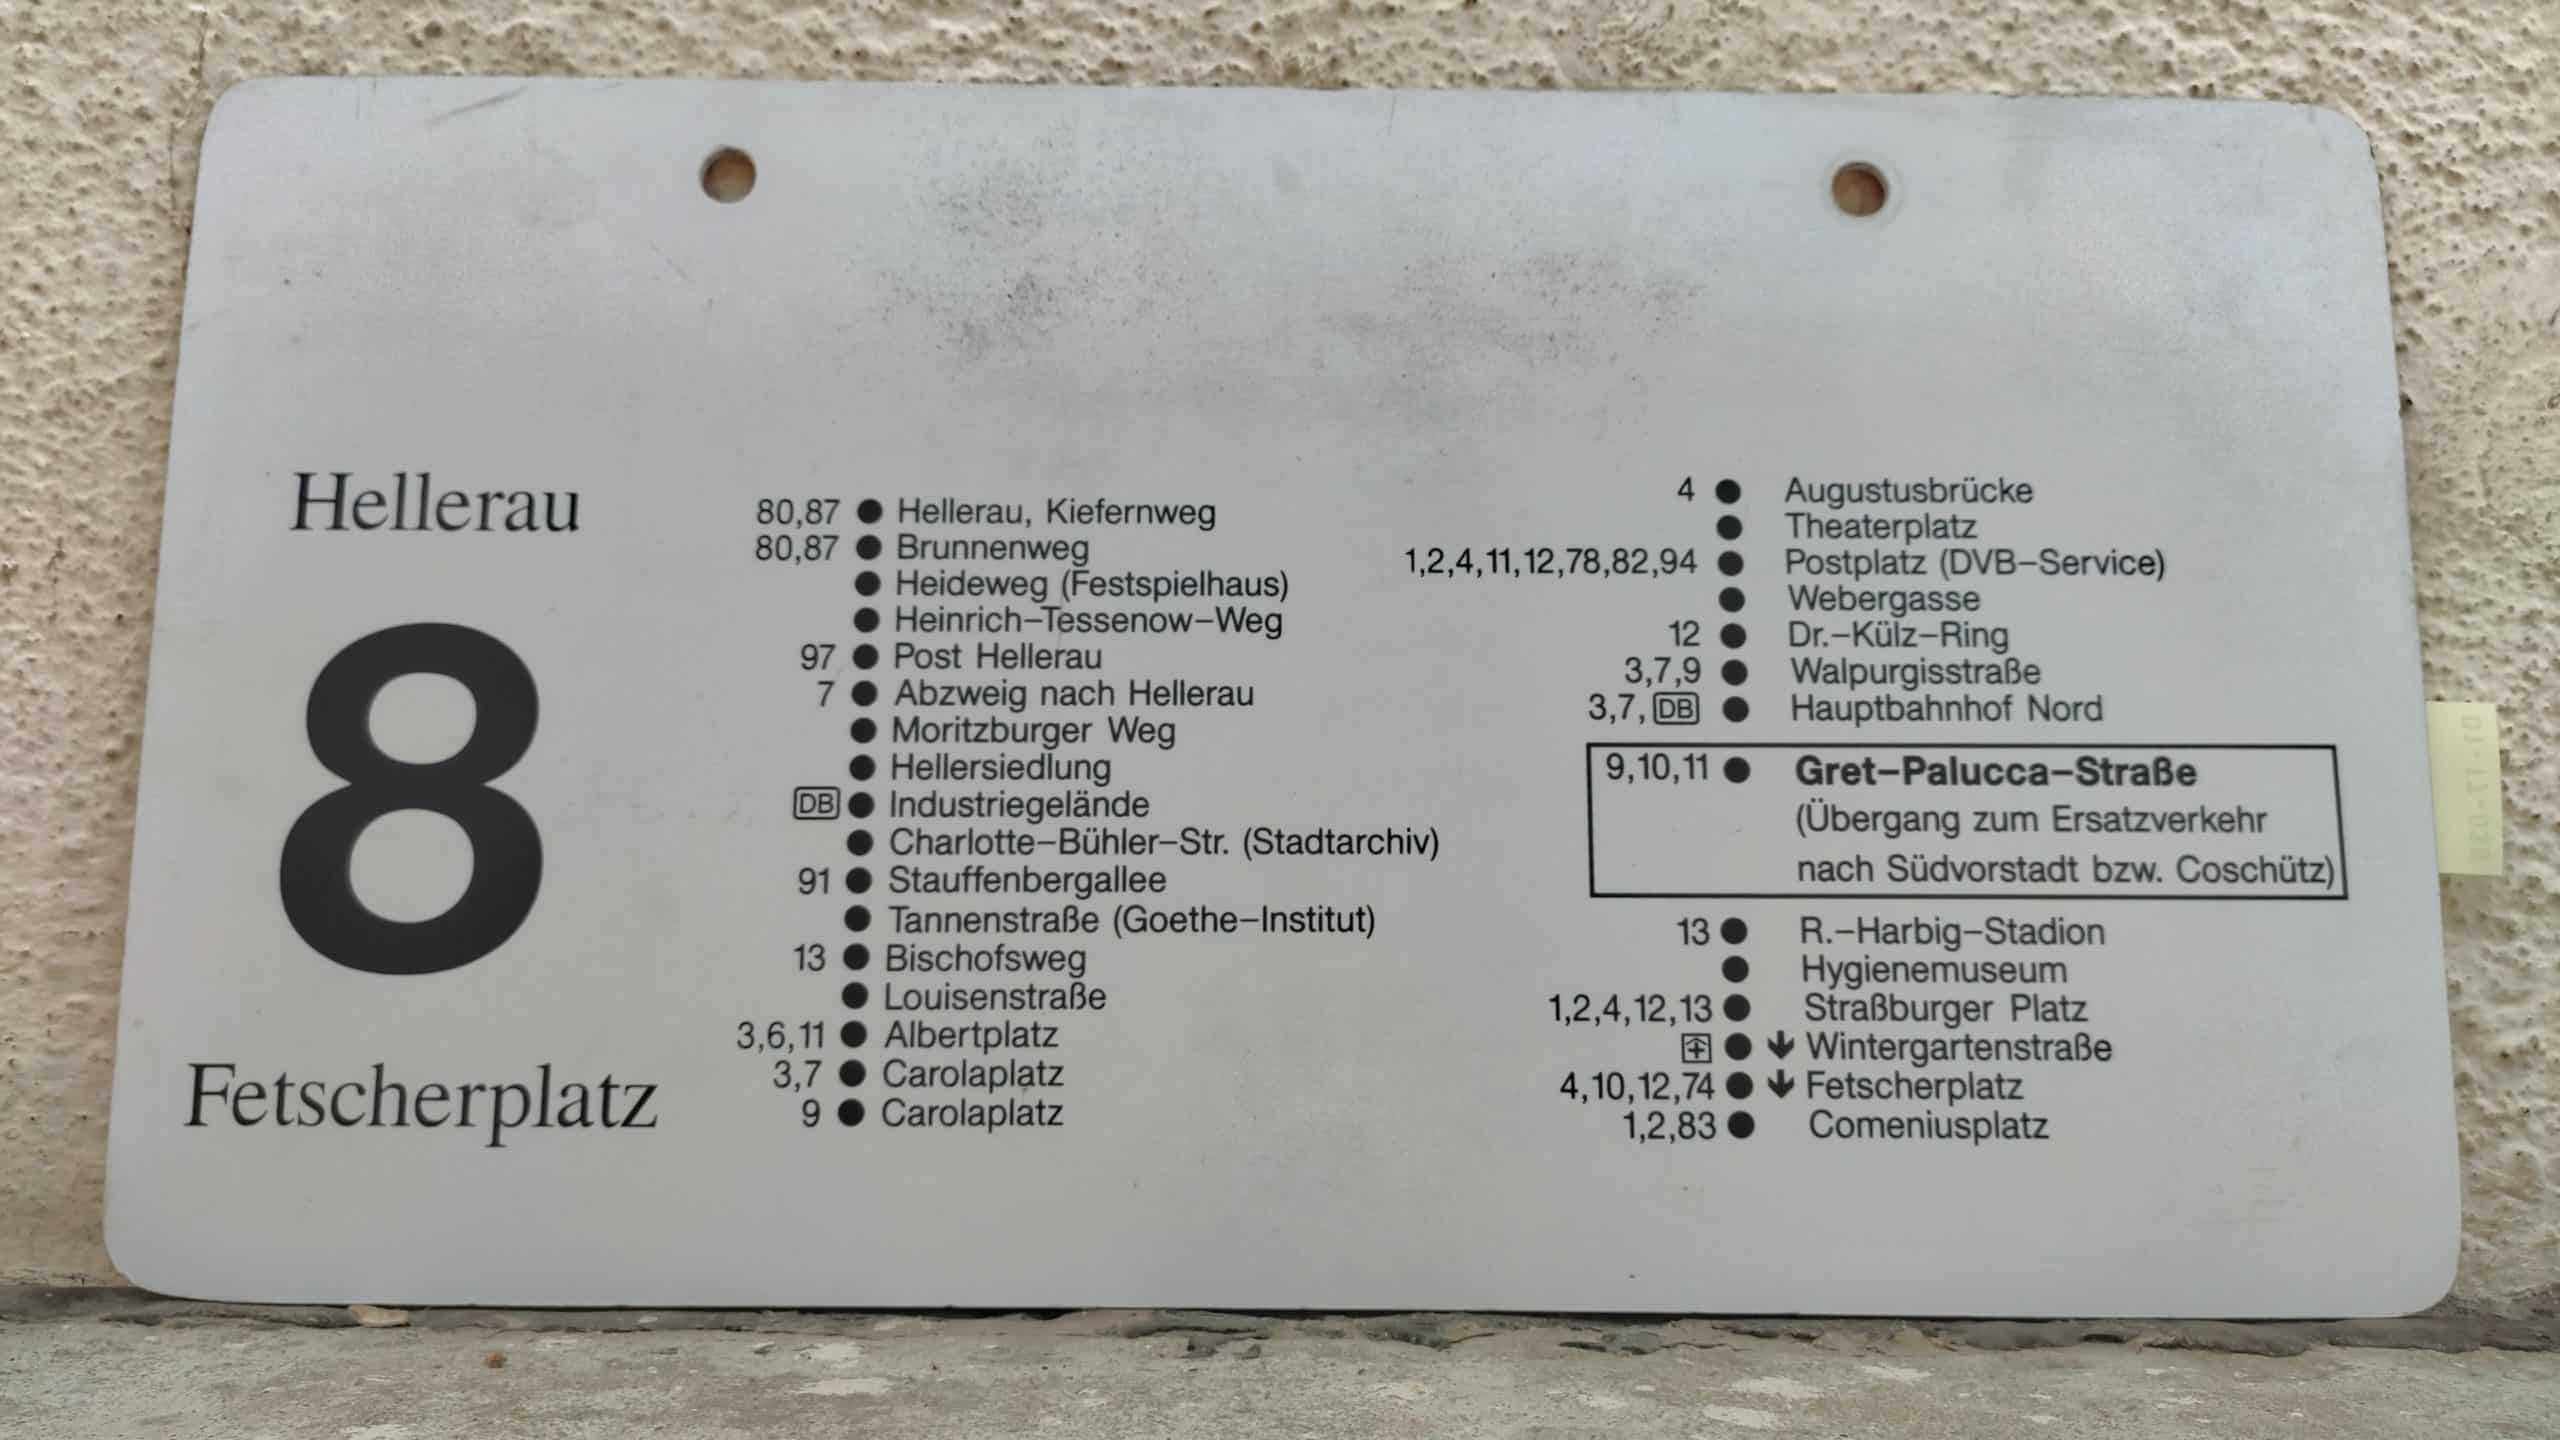 8 Hellerau – Fetscherplatz #2